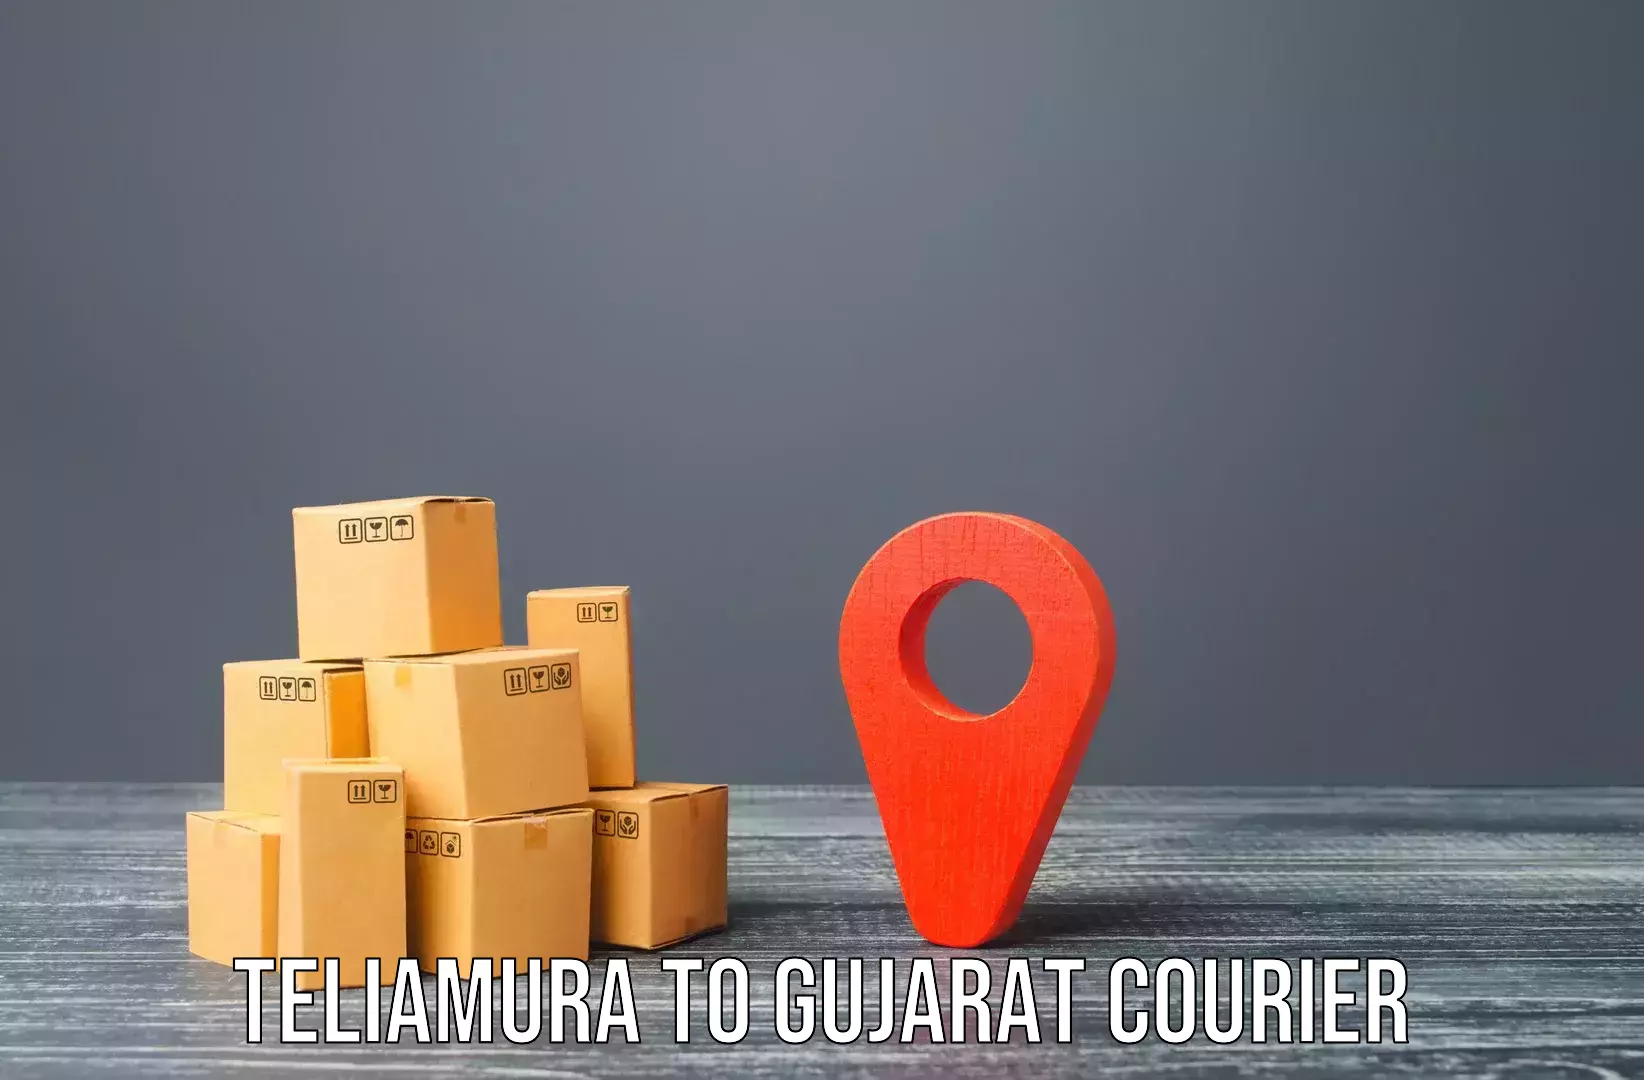 Furniture delivery service Teliamura to Rajula